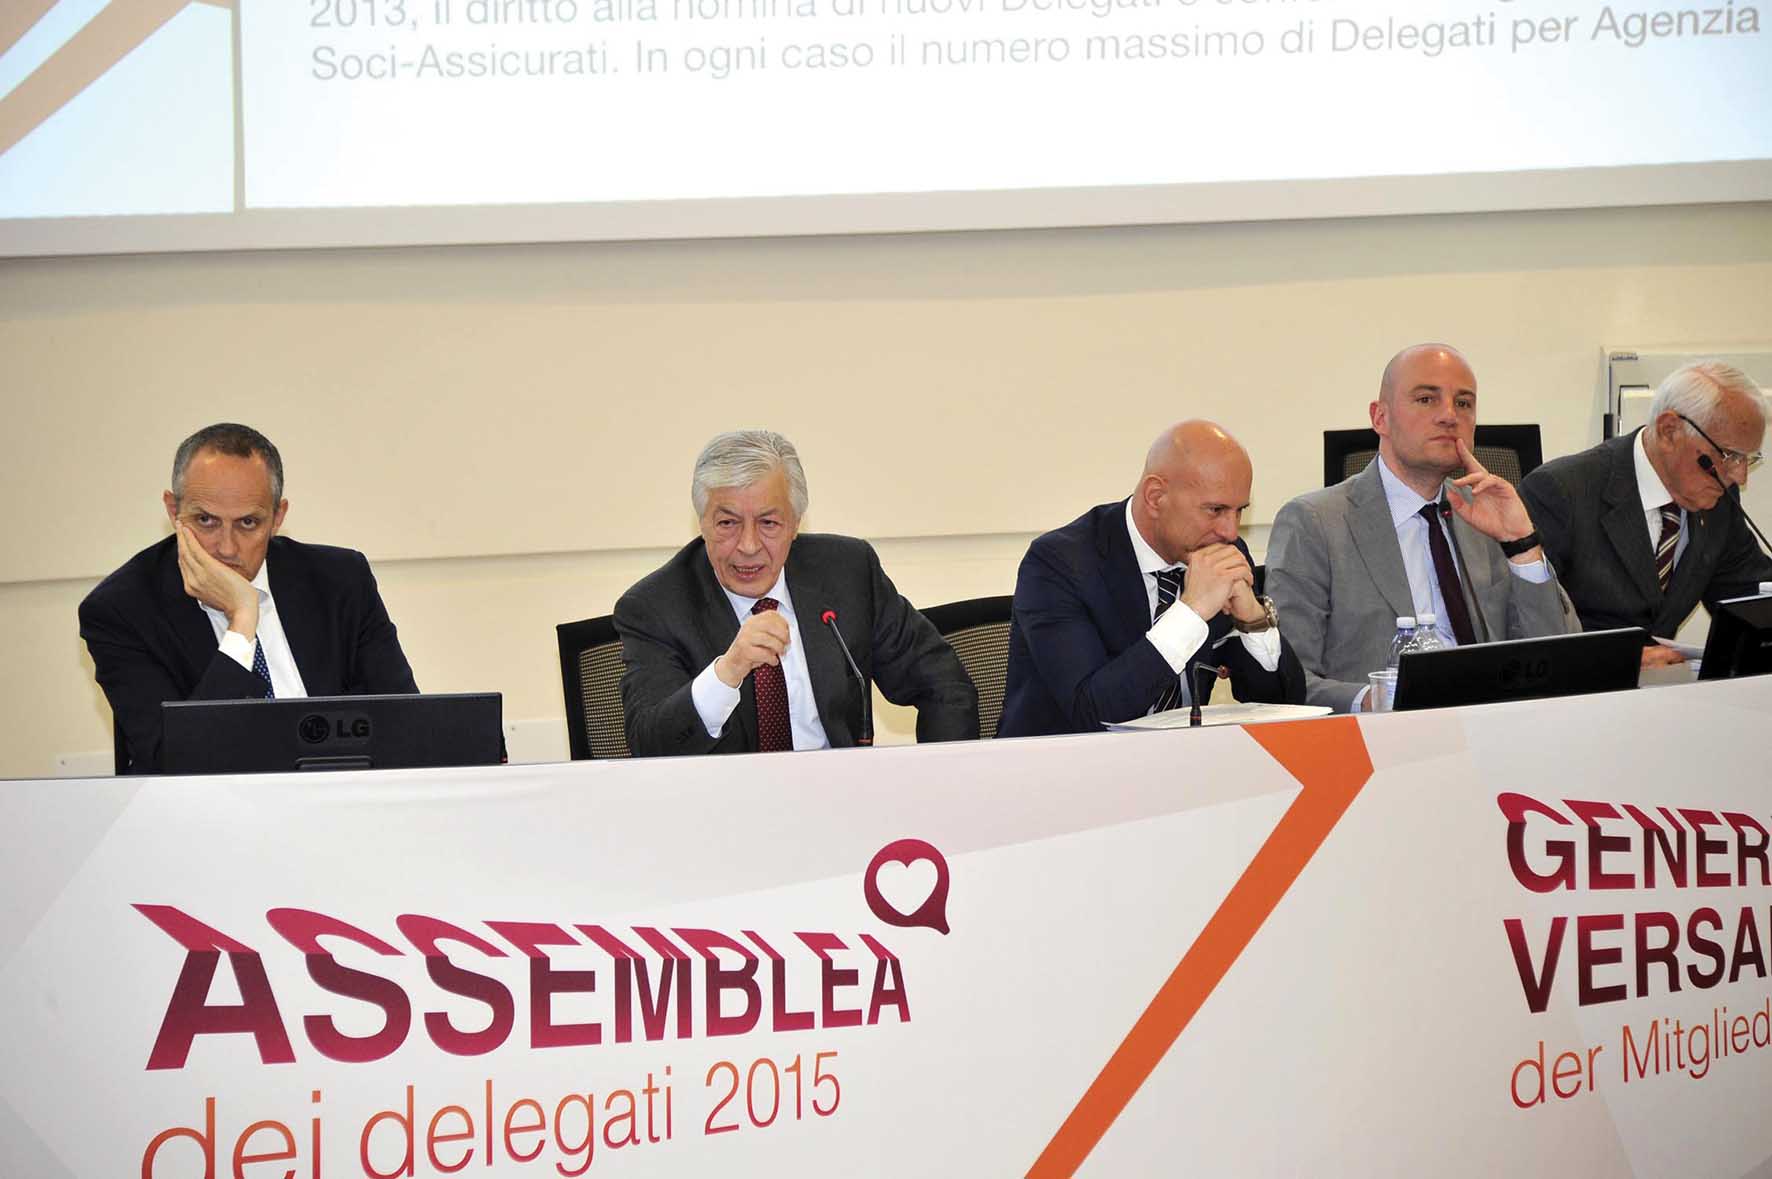 ITAS Assemblea dei delegati 2015 di benedetto grassi et altri